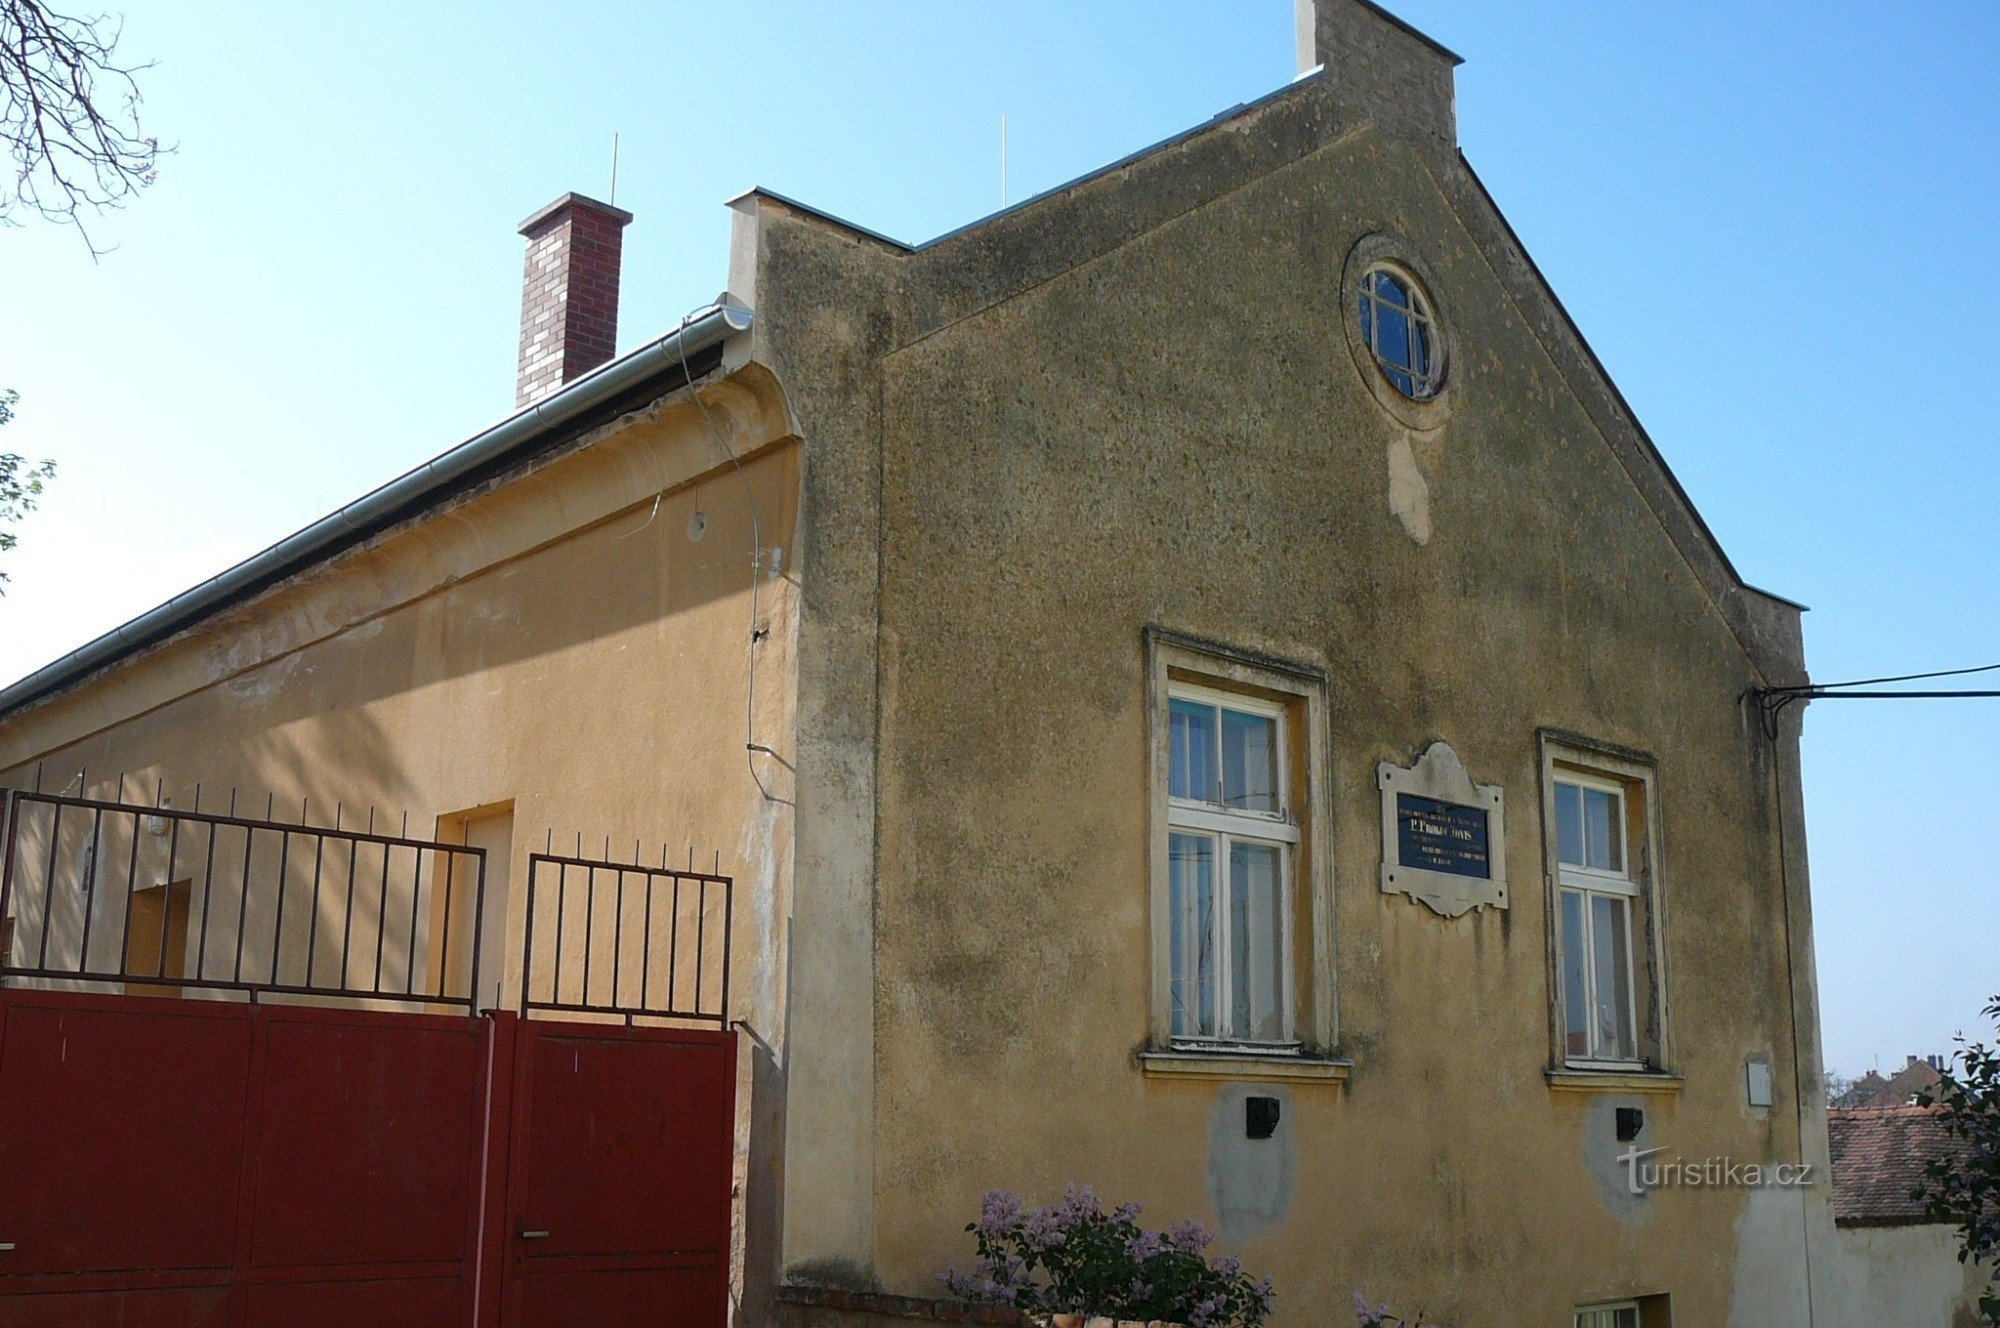 Дом, в котором жил Прокоп Дивиш во время своего пребывания в Пржиметицах.